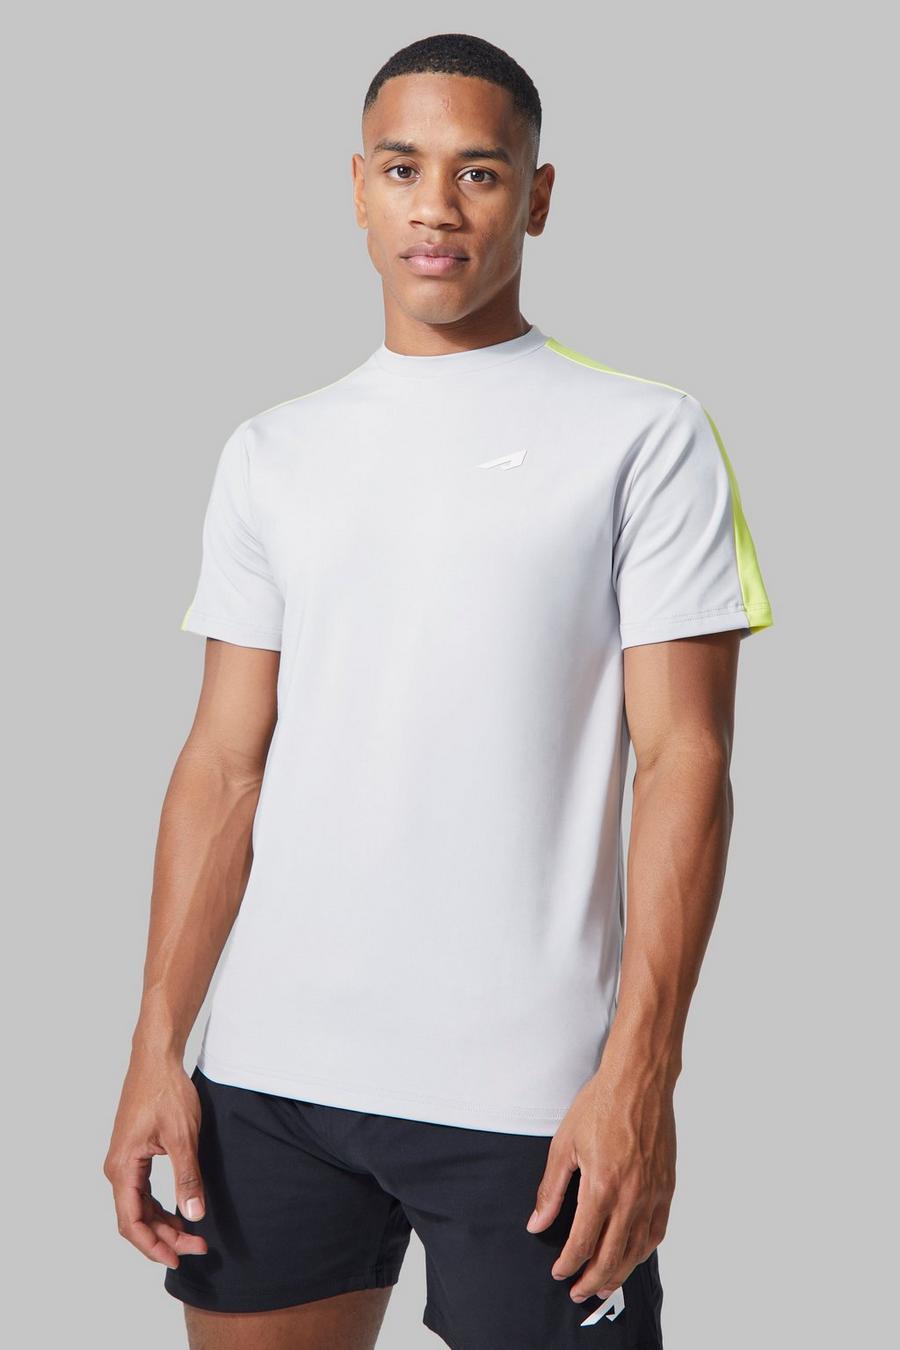 T-shirt Active per alta performance con pannelli e logo, Light grey grigio